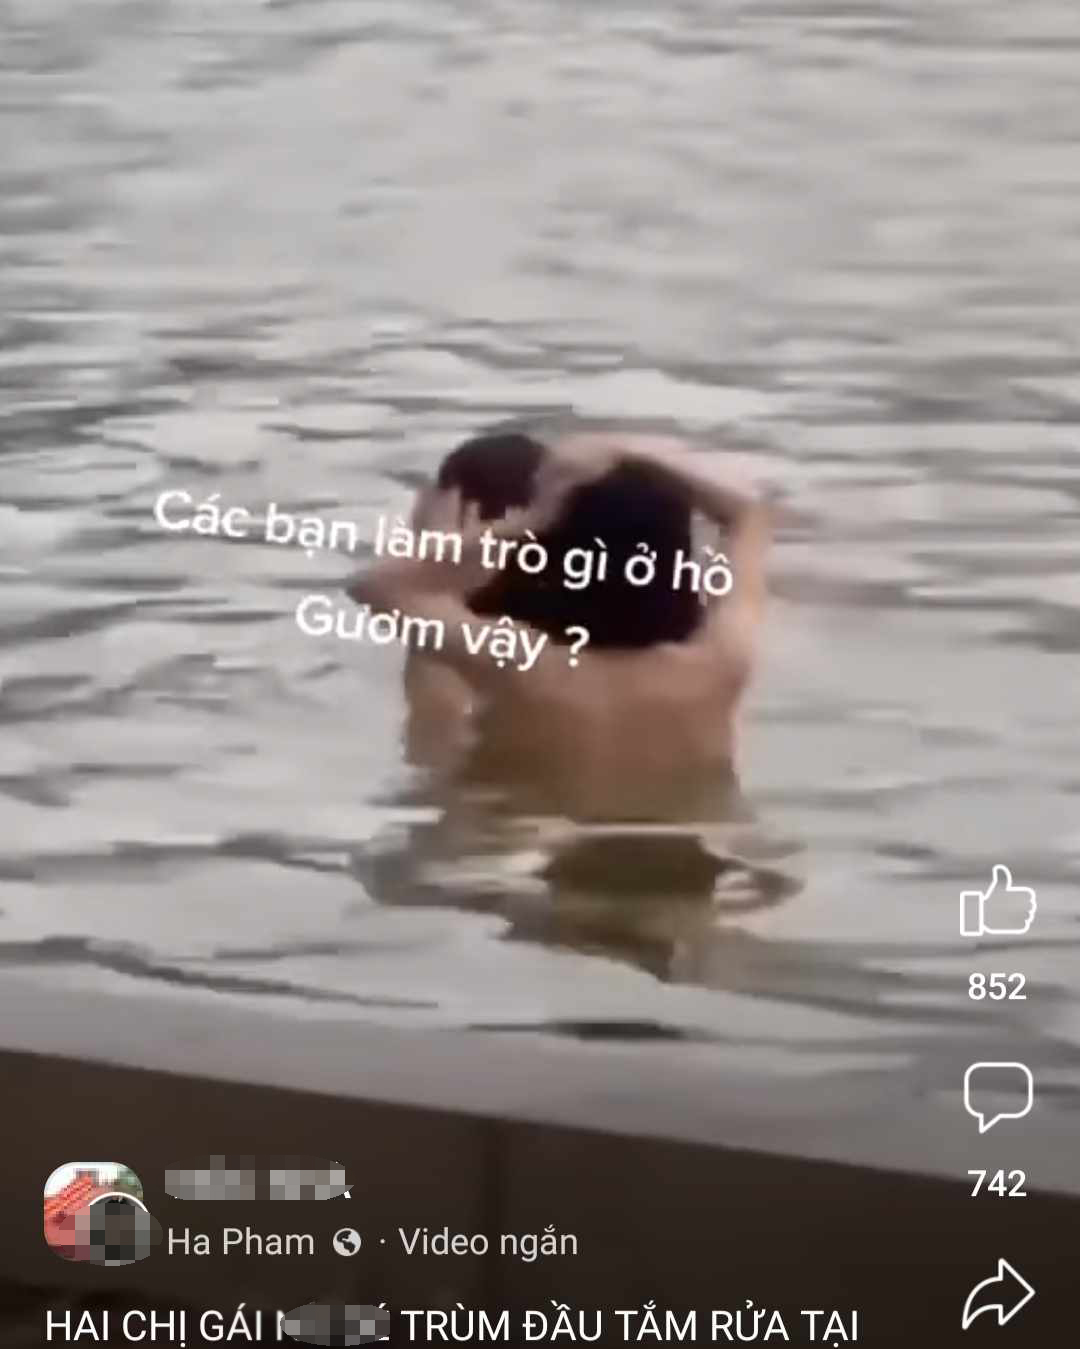 Lãnh đạo UBND quận Hoàn Kiếm cho biết, đang cho xác minh clip nghi cắt ghép 2 người tắm dưới Hồ Gươm.